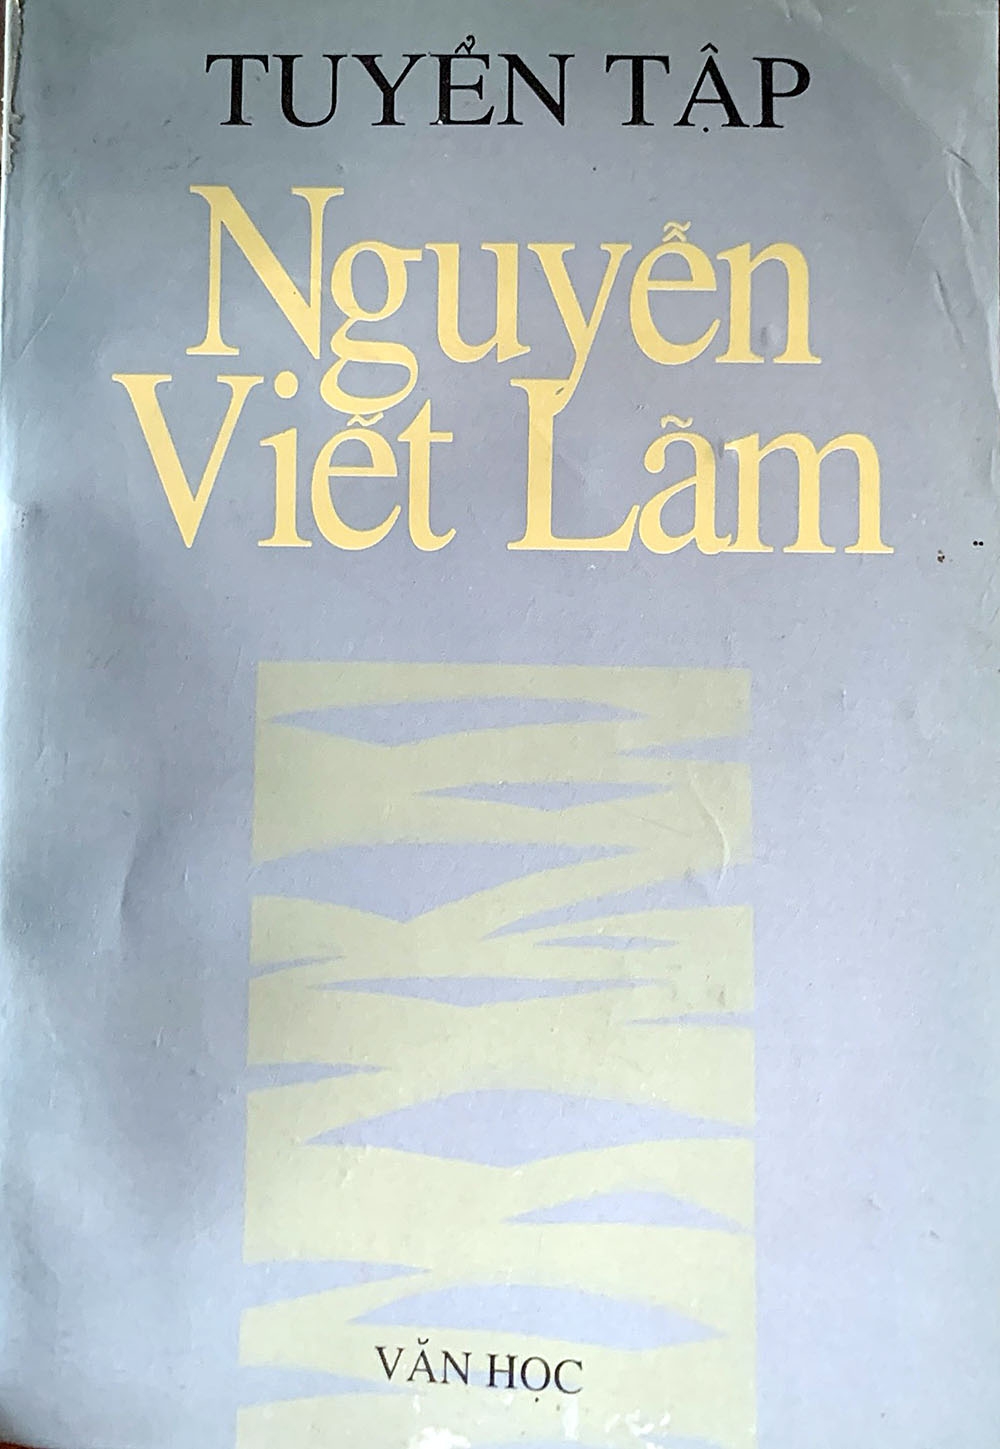 Tác giả - Tác phẩm: Thơ Nguyễn Viết Lãm - Kể chuyện quê nhà